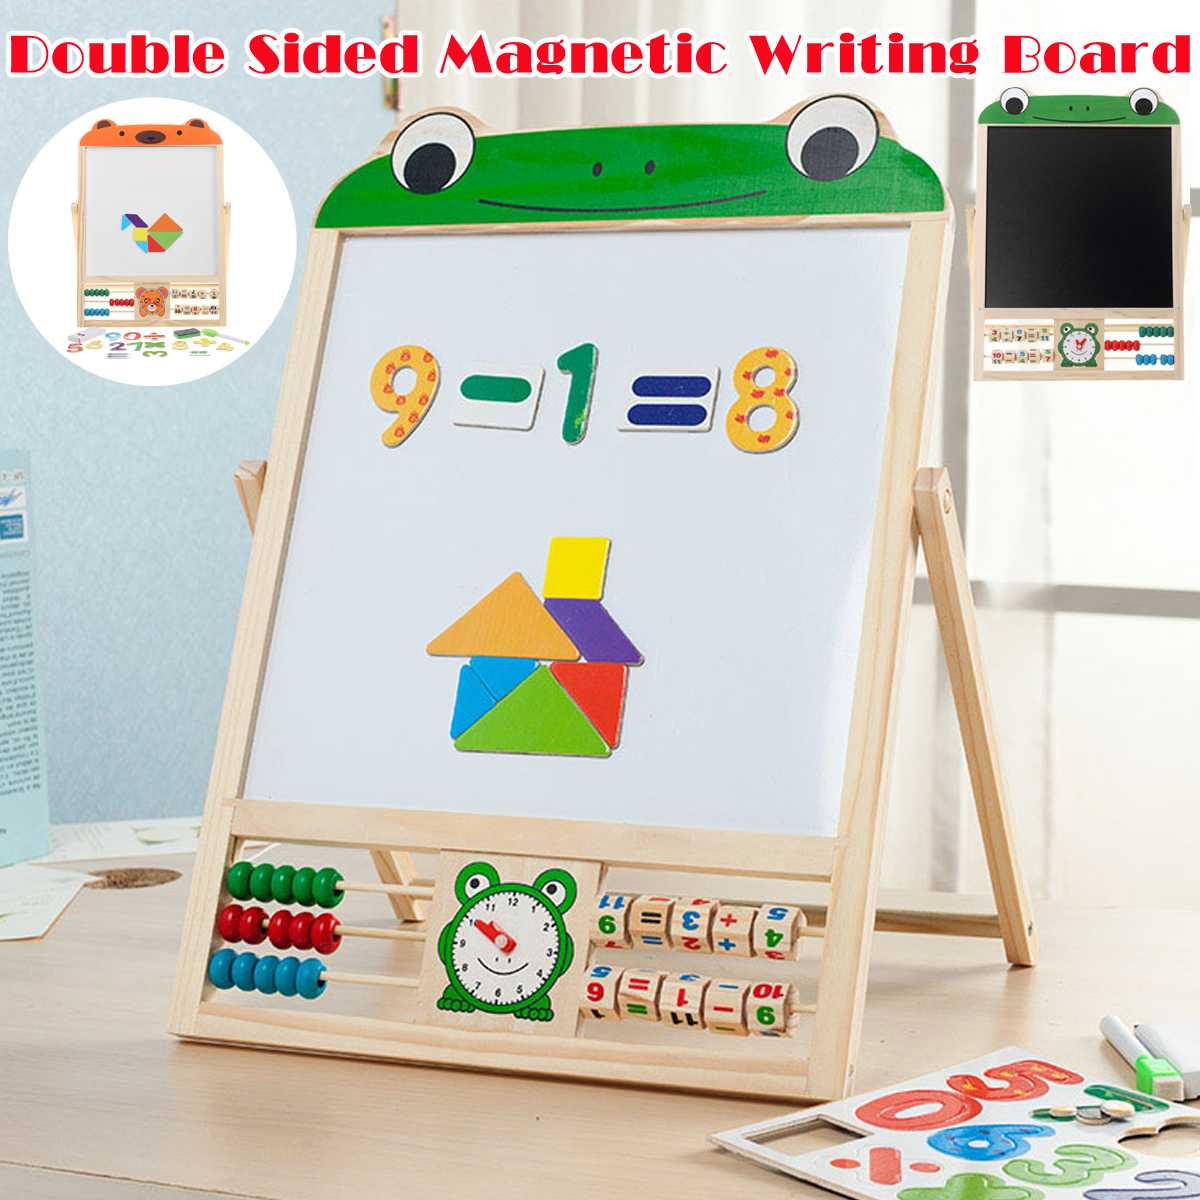 Kinderen Dubbelzijdig Schildersezel Art Schildersezel Krijt Schoolbord Magnetisch Schrijfbord Met Nummer Stickers En Tangram